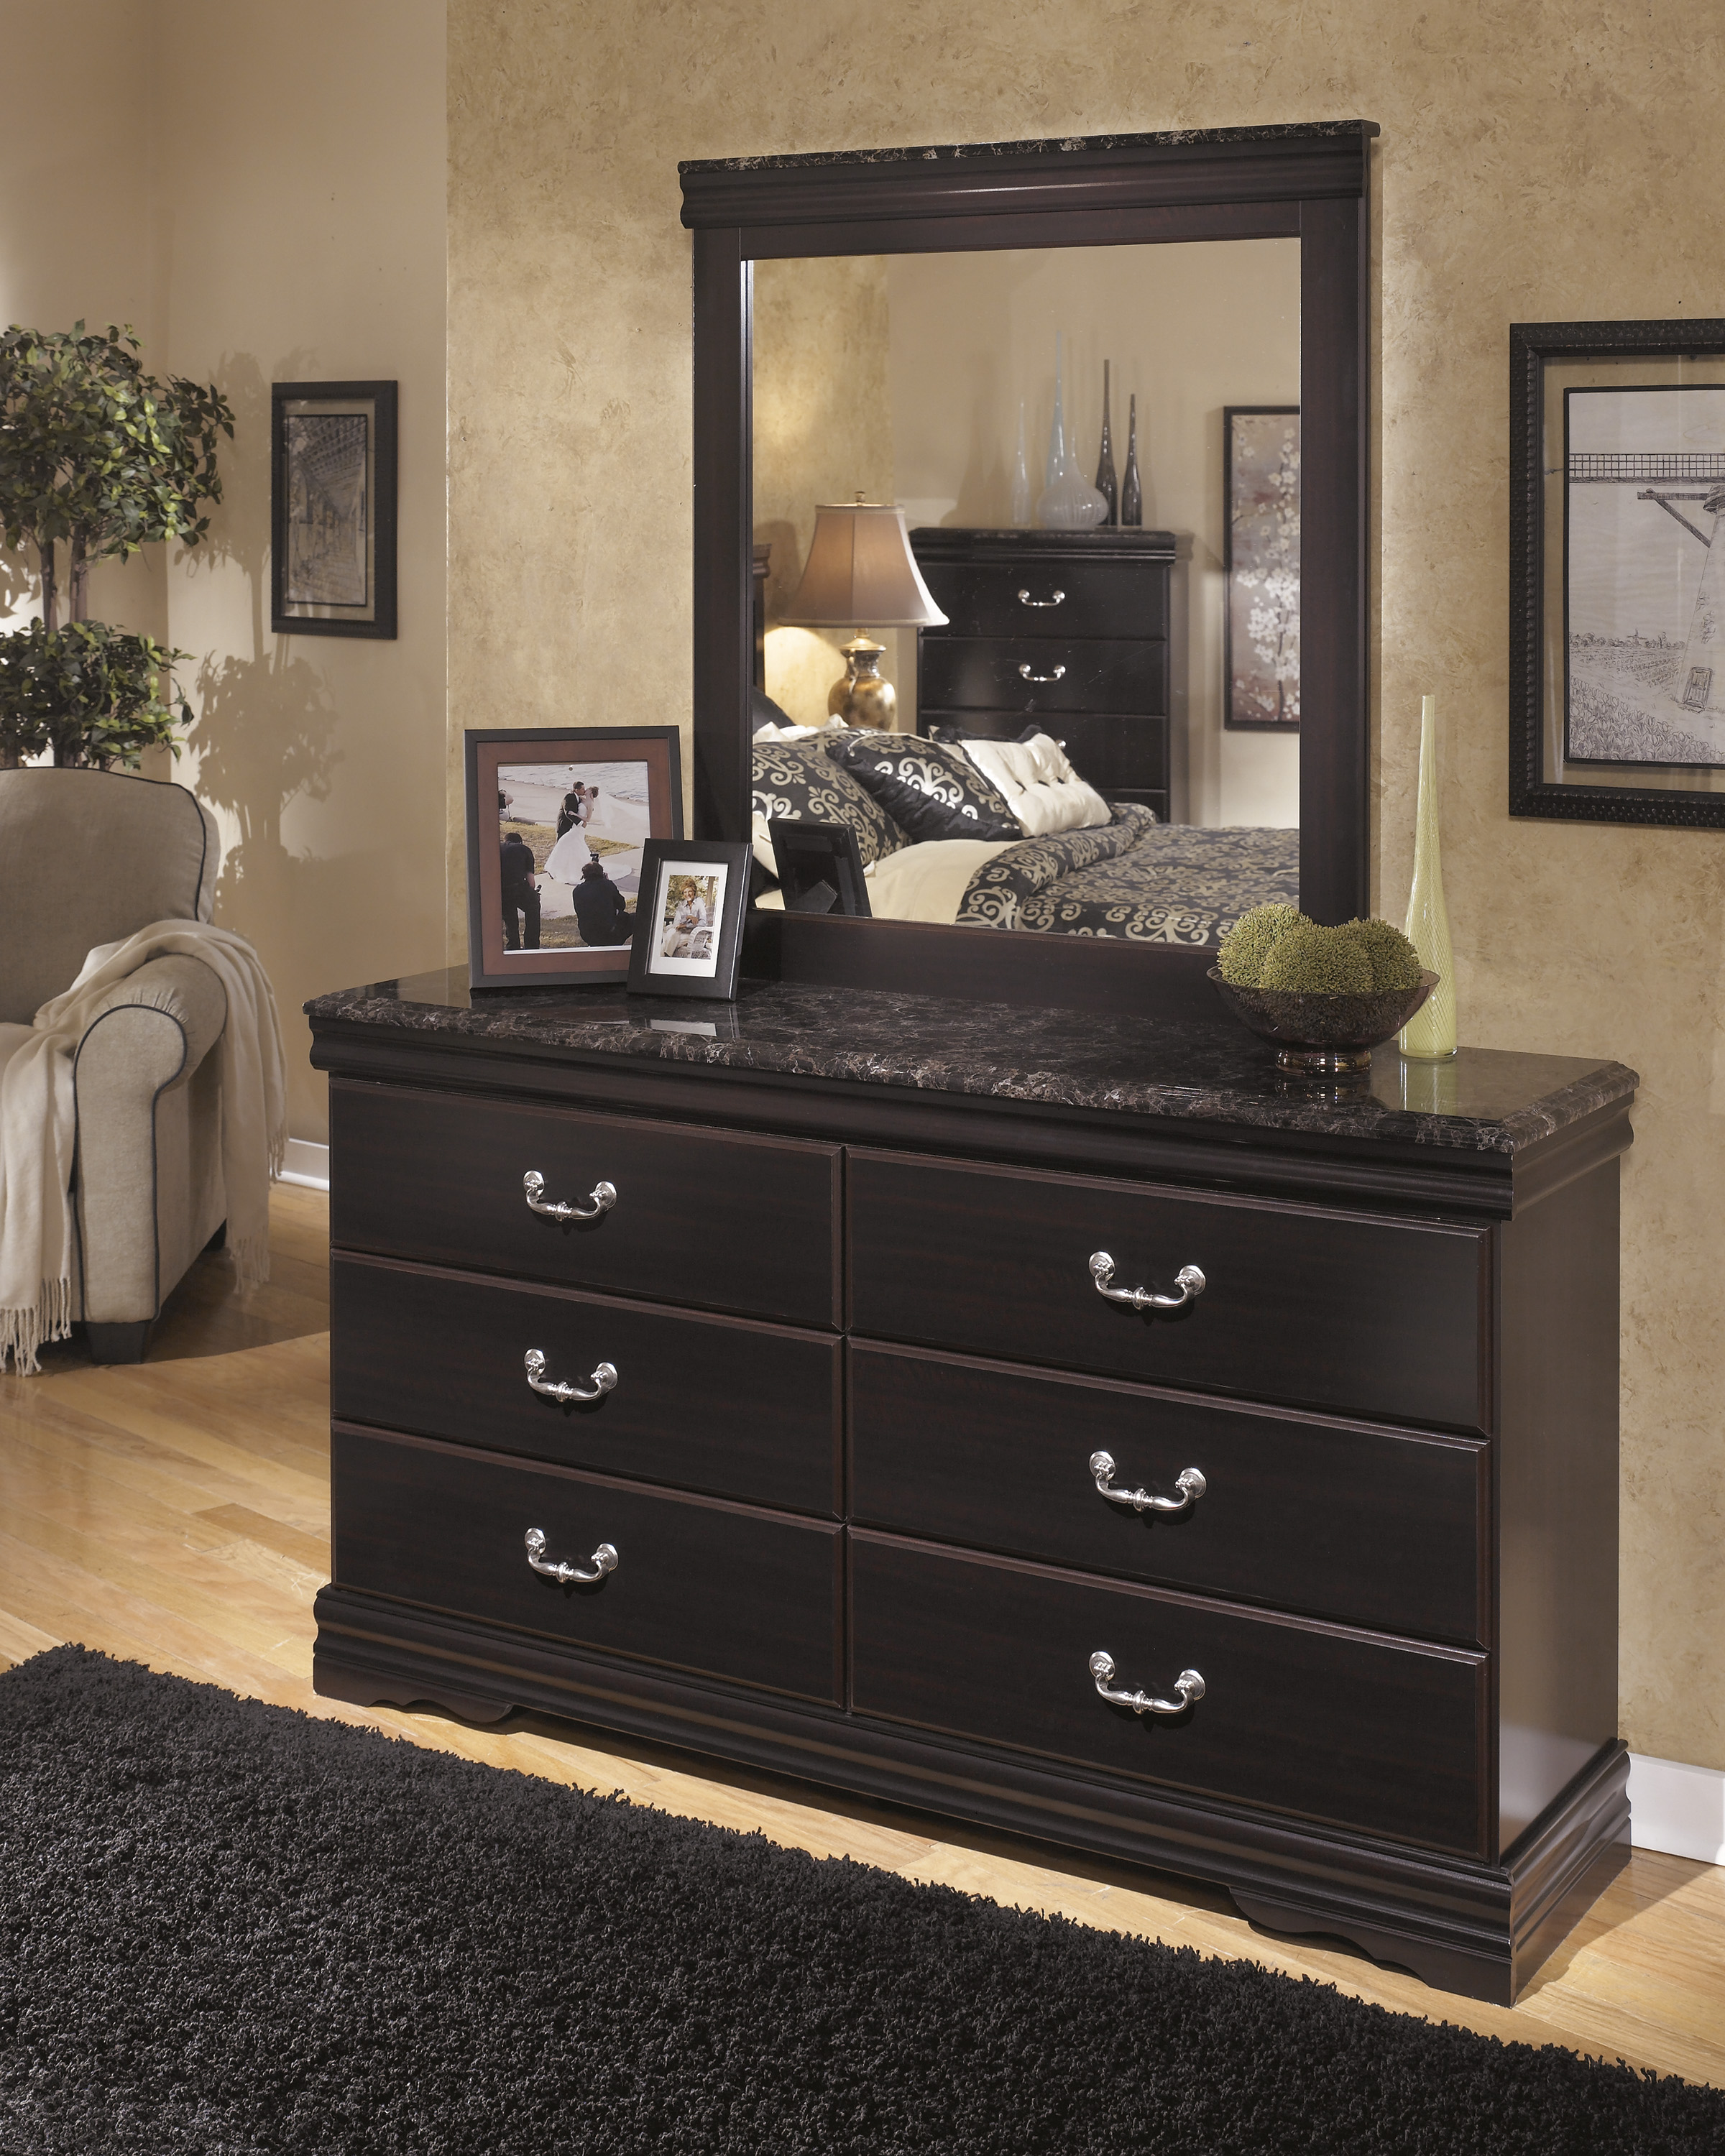 Queen Sleigh Bed Dresser Mirror, Marble Top Dresser Bedroom Set